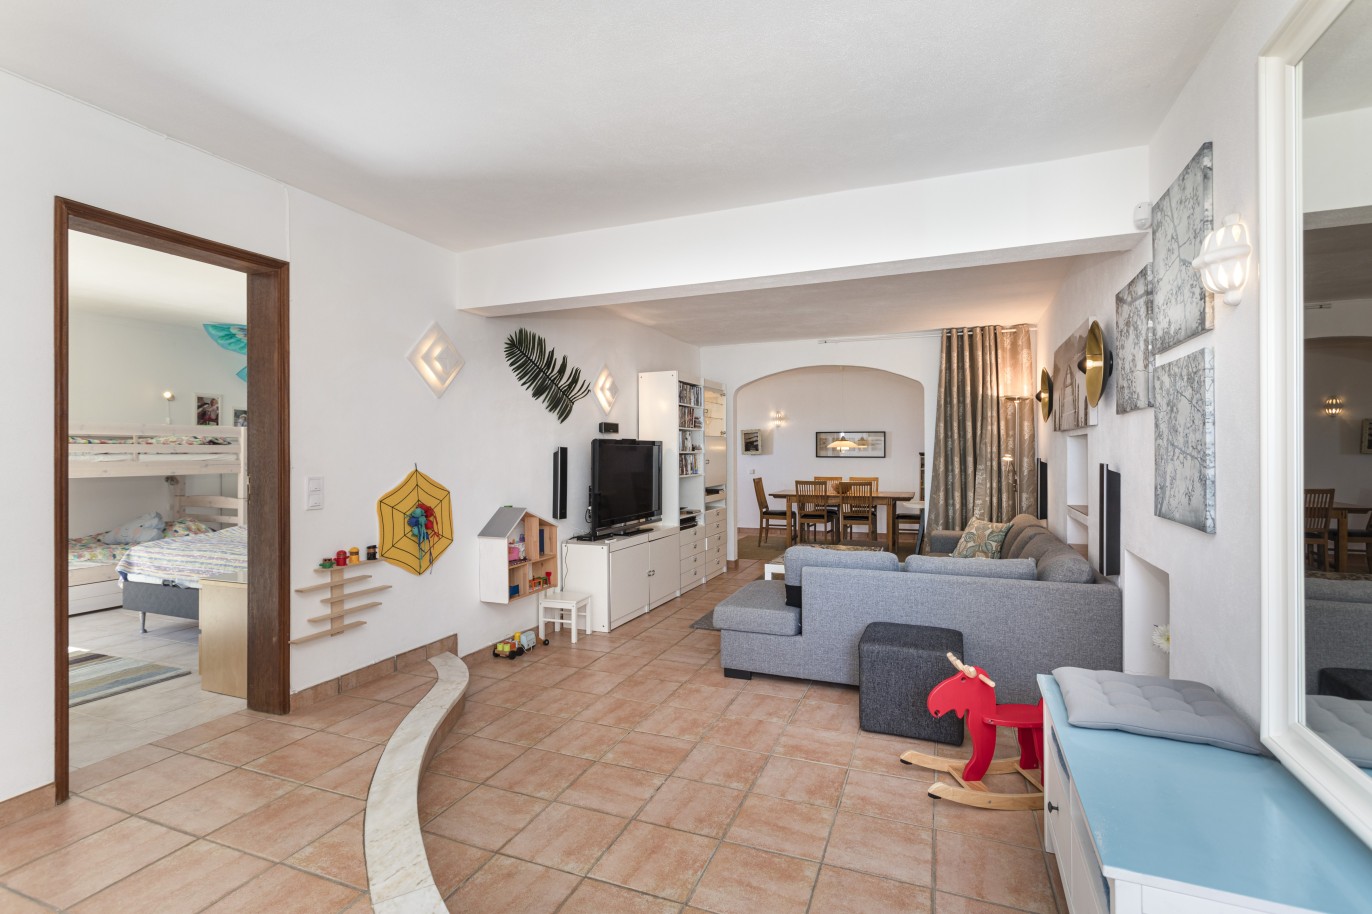 5 bedroom villa with pool and sea view, for sale in Estoi, Algarve_230481